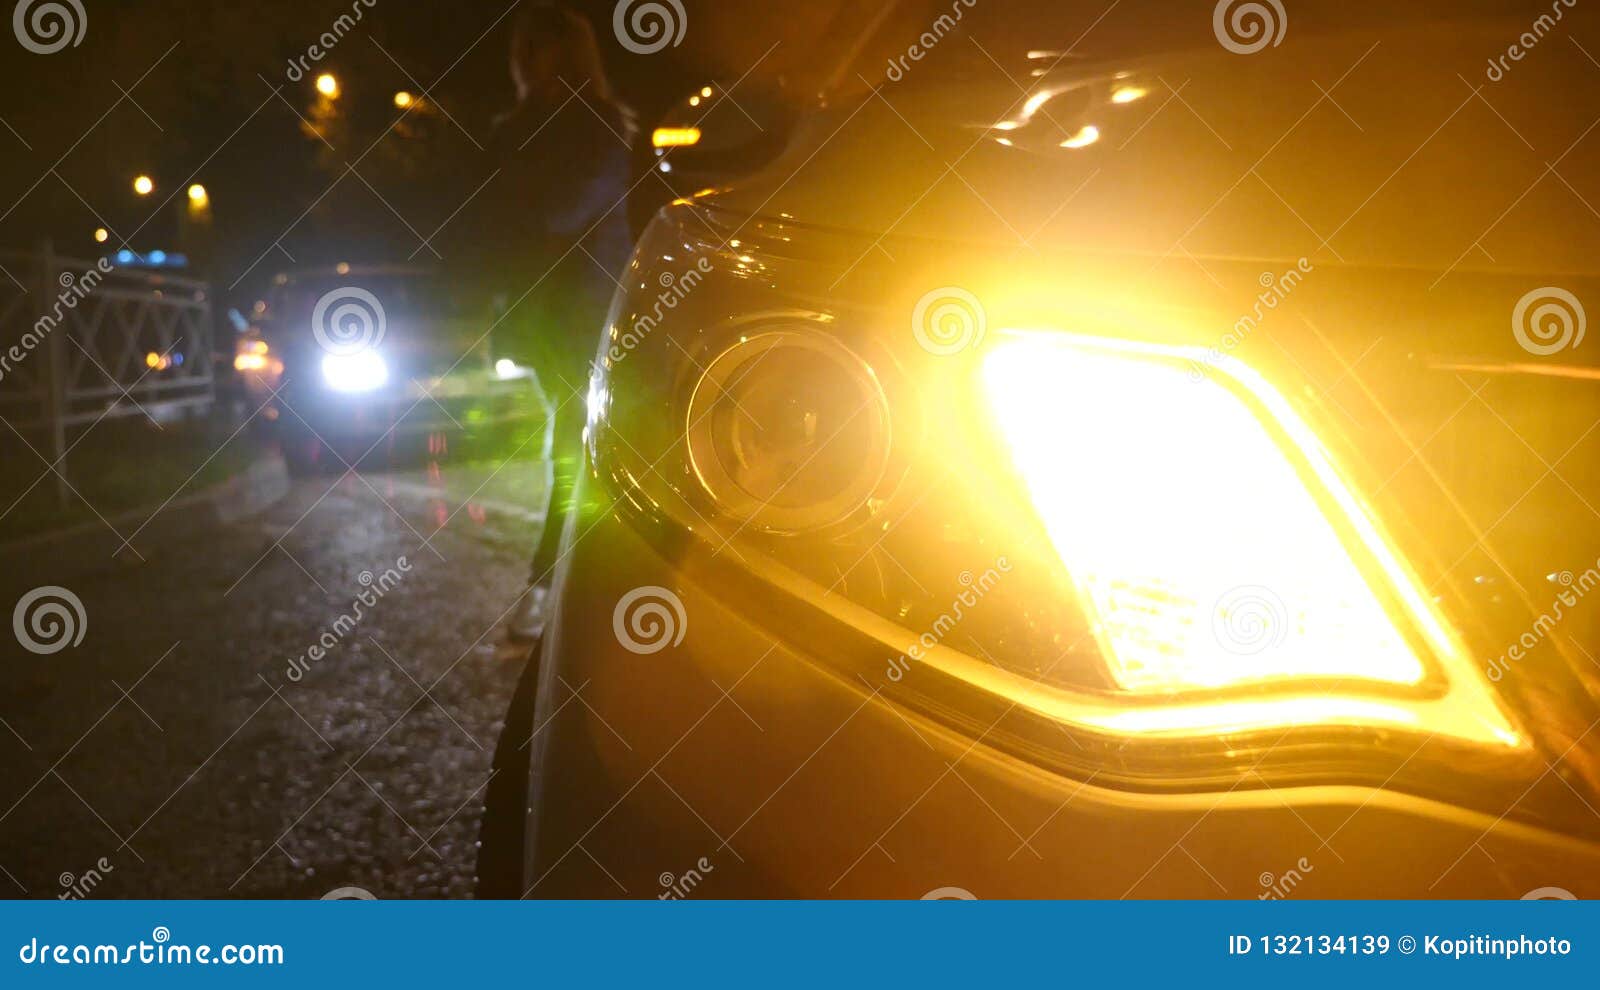 Brouilleur Furtif De Voiture Le Brouilleur Furtif De Voiture Dévoilé  Lumière D'alarme De Voiture Factice lumières décoratives de voiture lumière  de